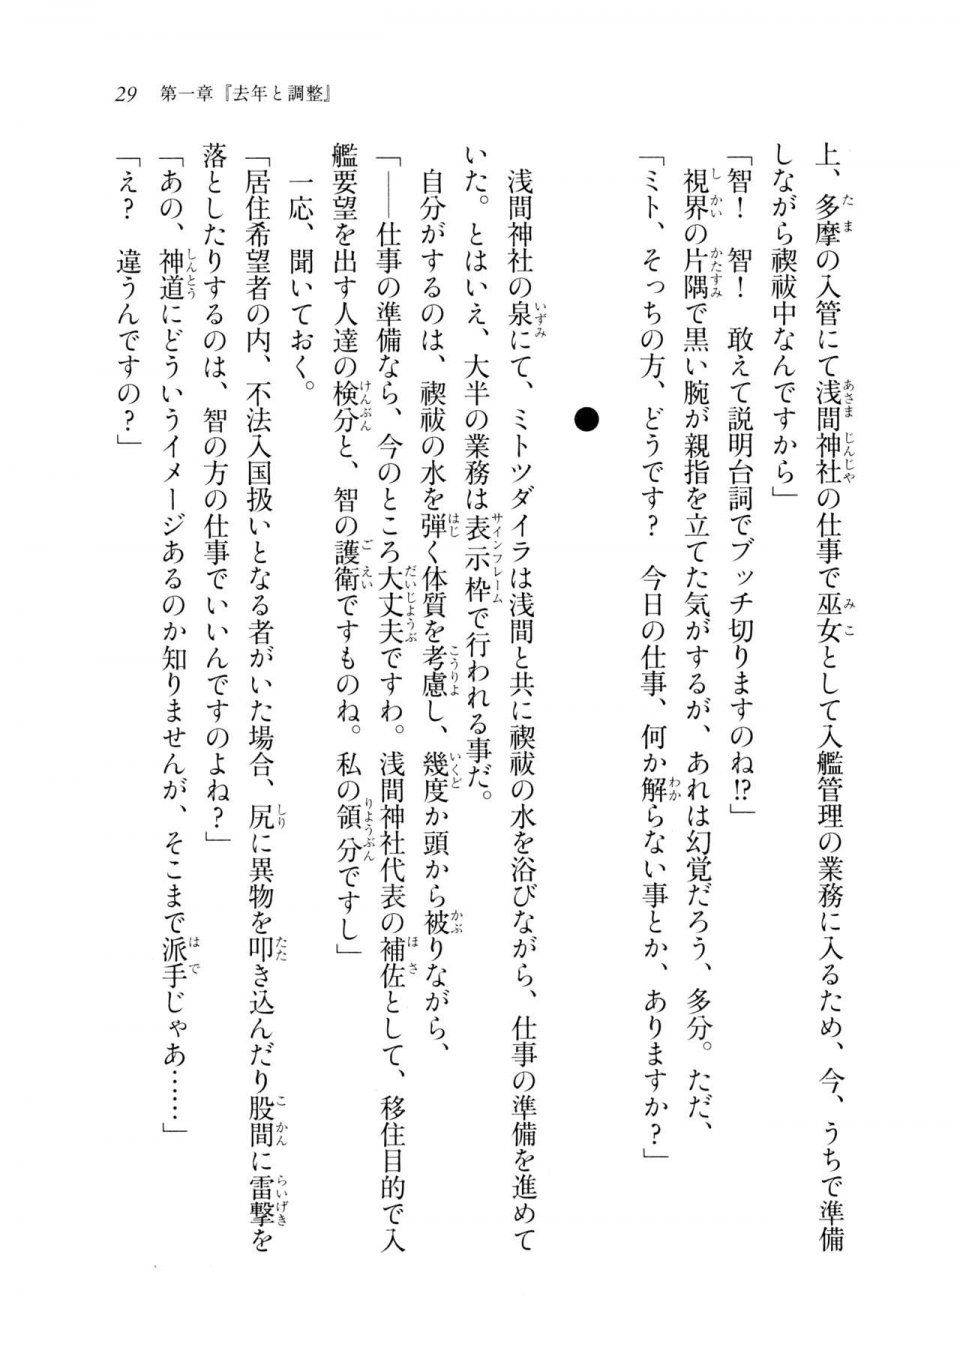 Kyoukai Senjou no Horizon LN Sidestory Vol 2 - Photo #27